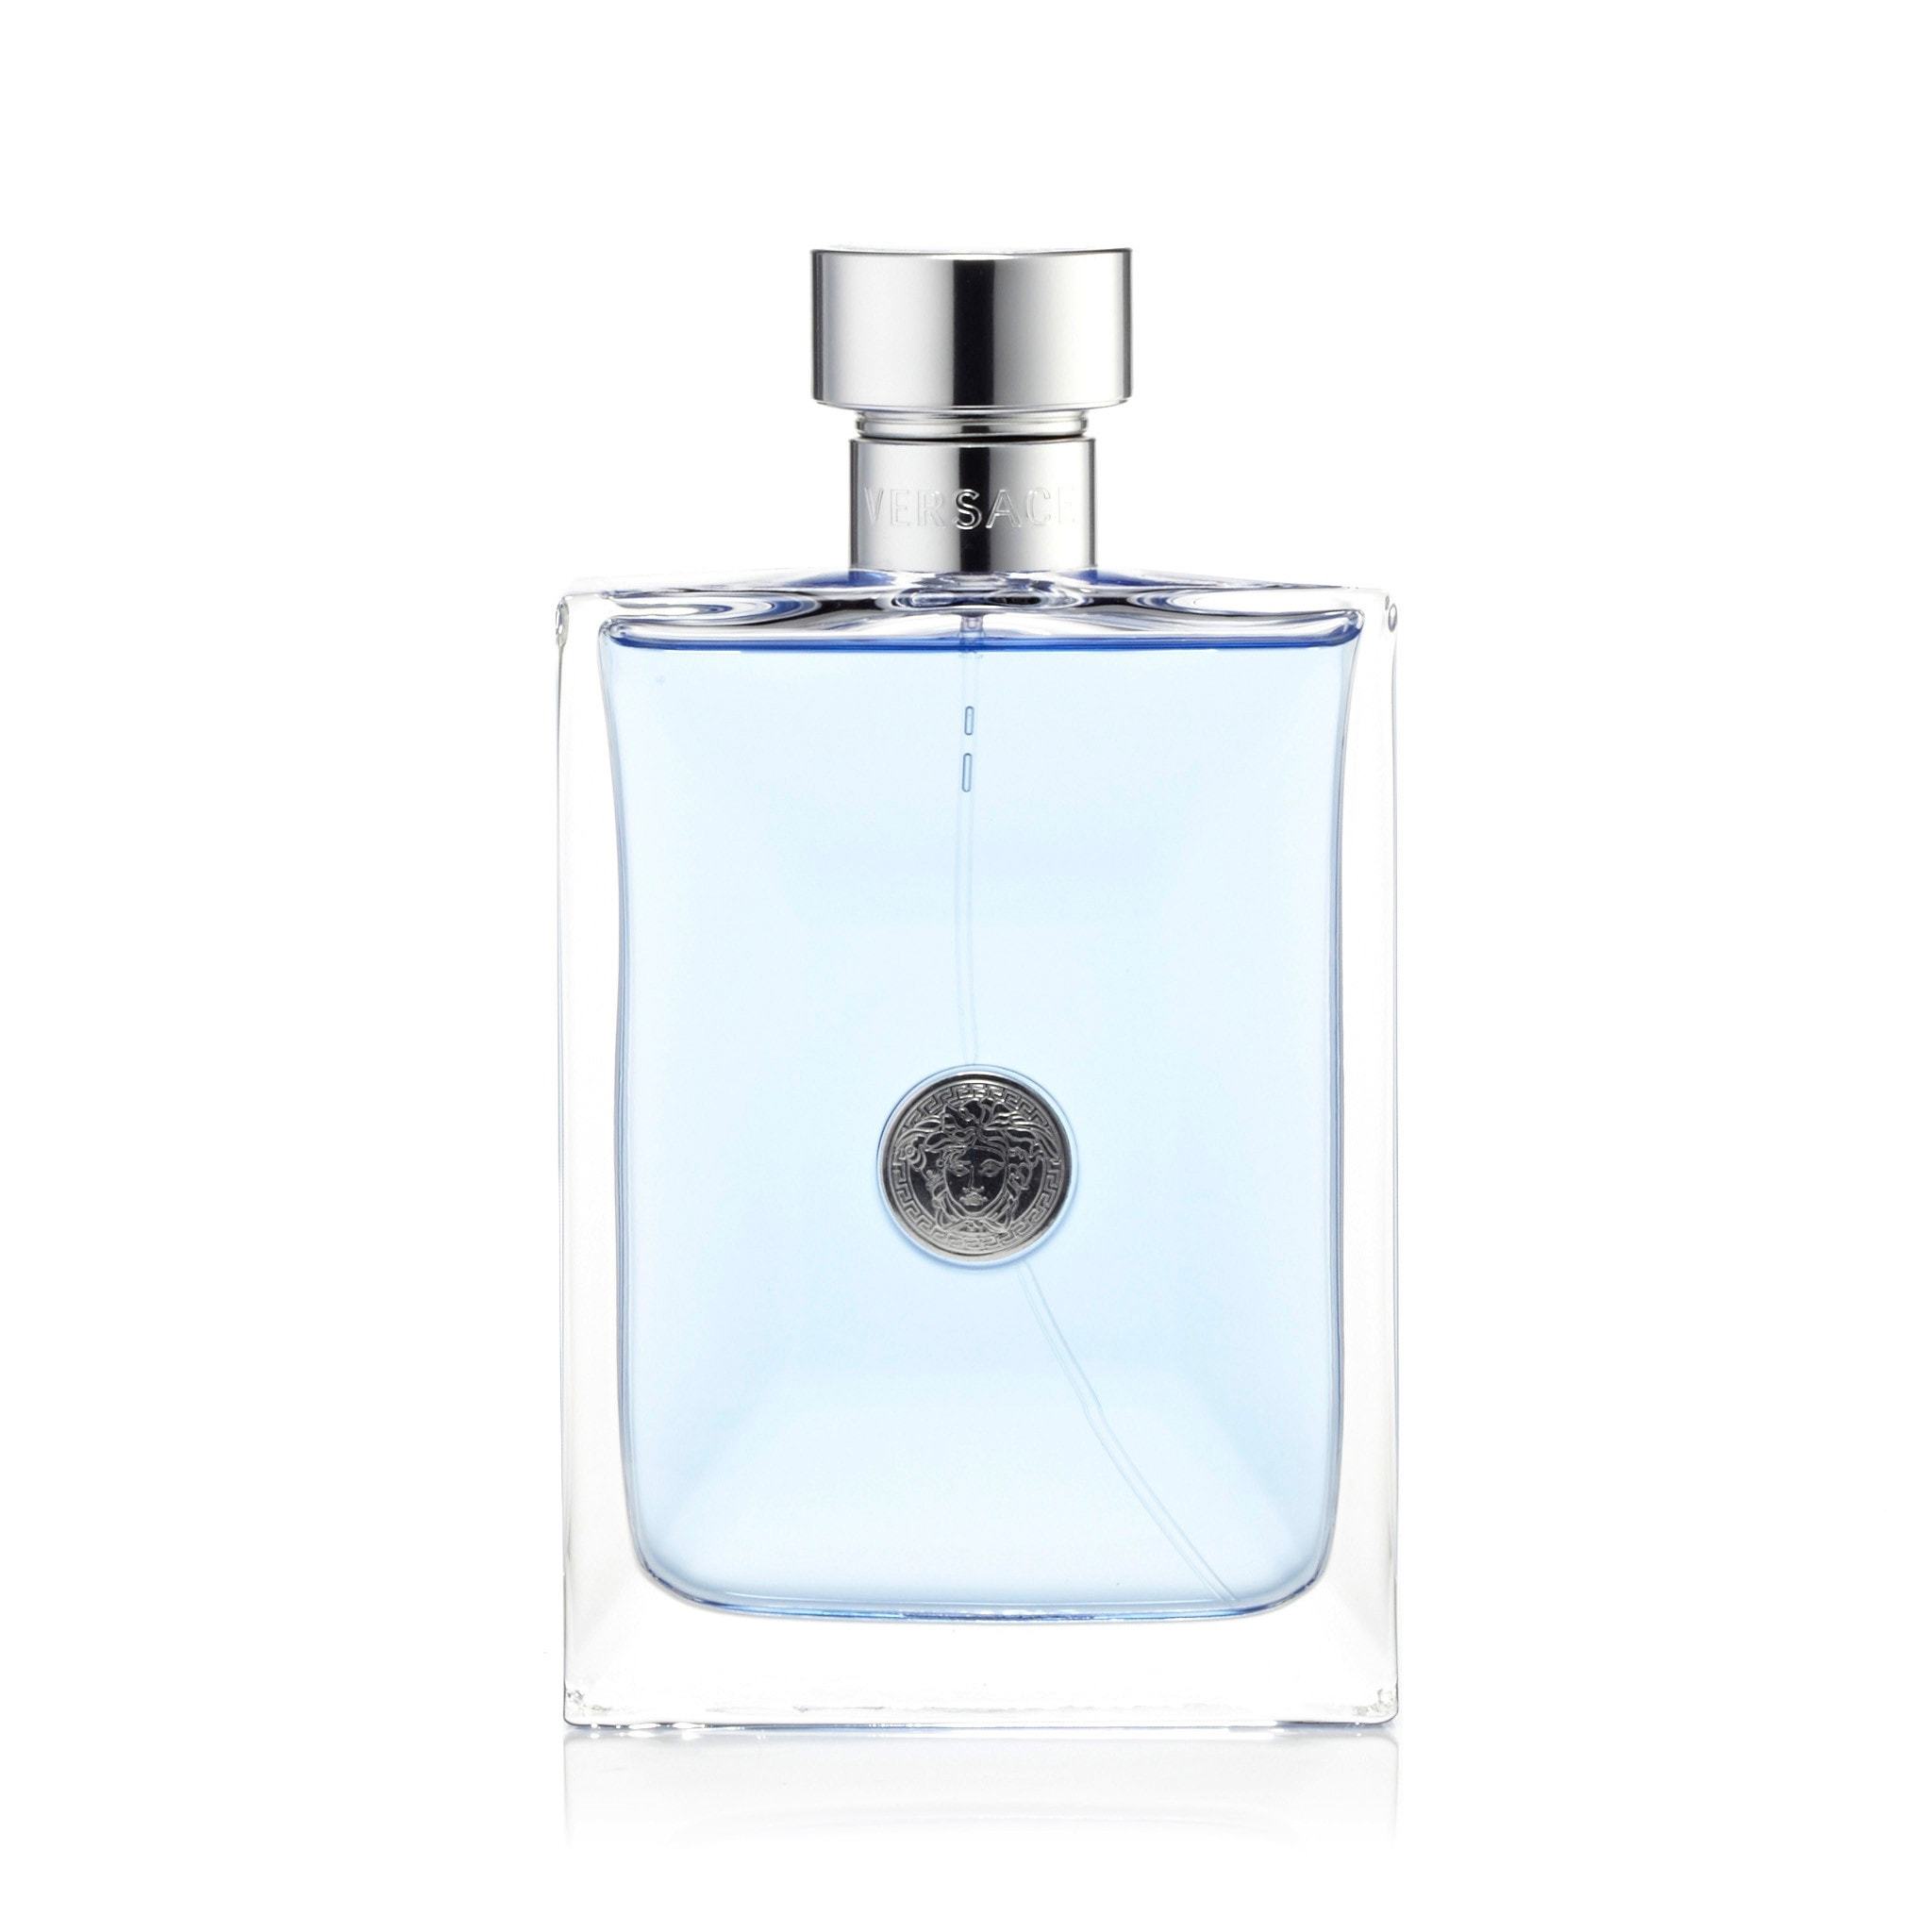 Perfume Acqua di Gio Absolu Giorgio Armani hombre 75ml original